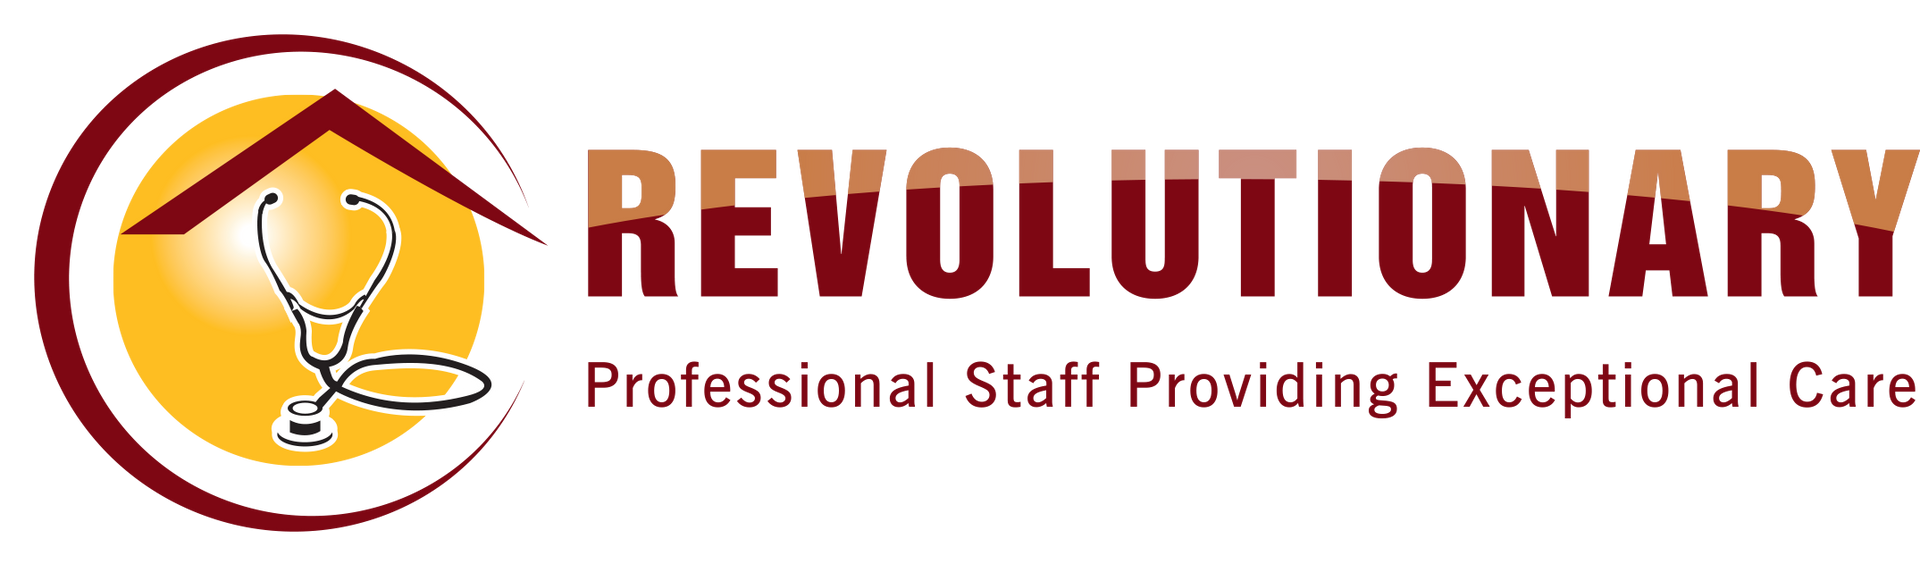 Revolutionary Home Health & Hospice - Logo